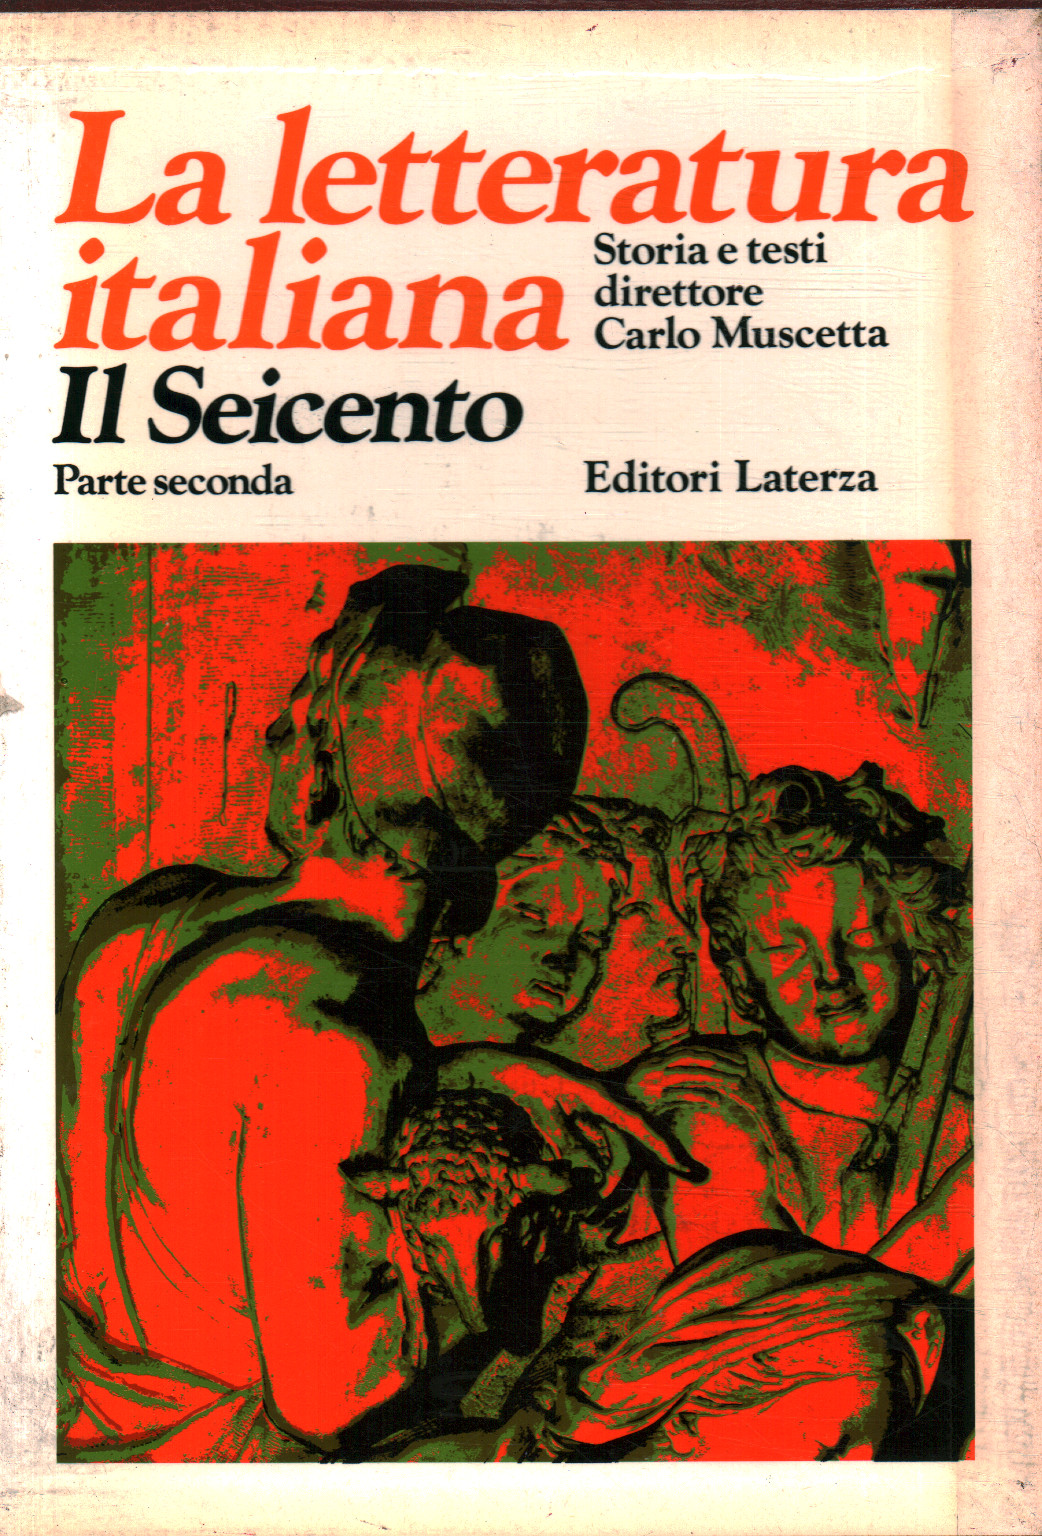 La letteratura italiana Storia e testi. Il Seicent, Alberto Asor Rosa Franca Angelini Salvatore S. Nigro